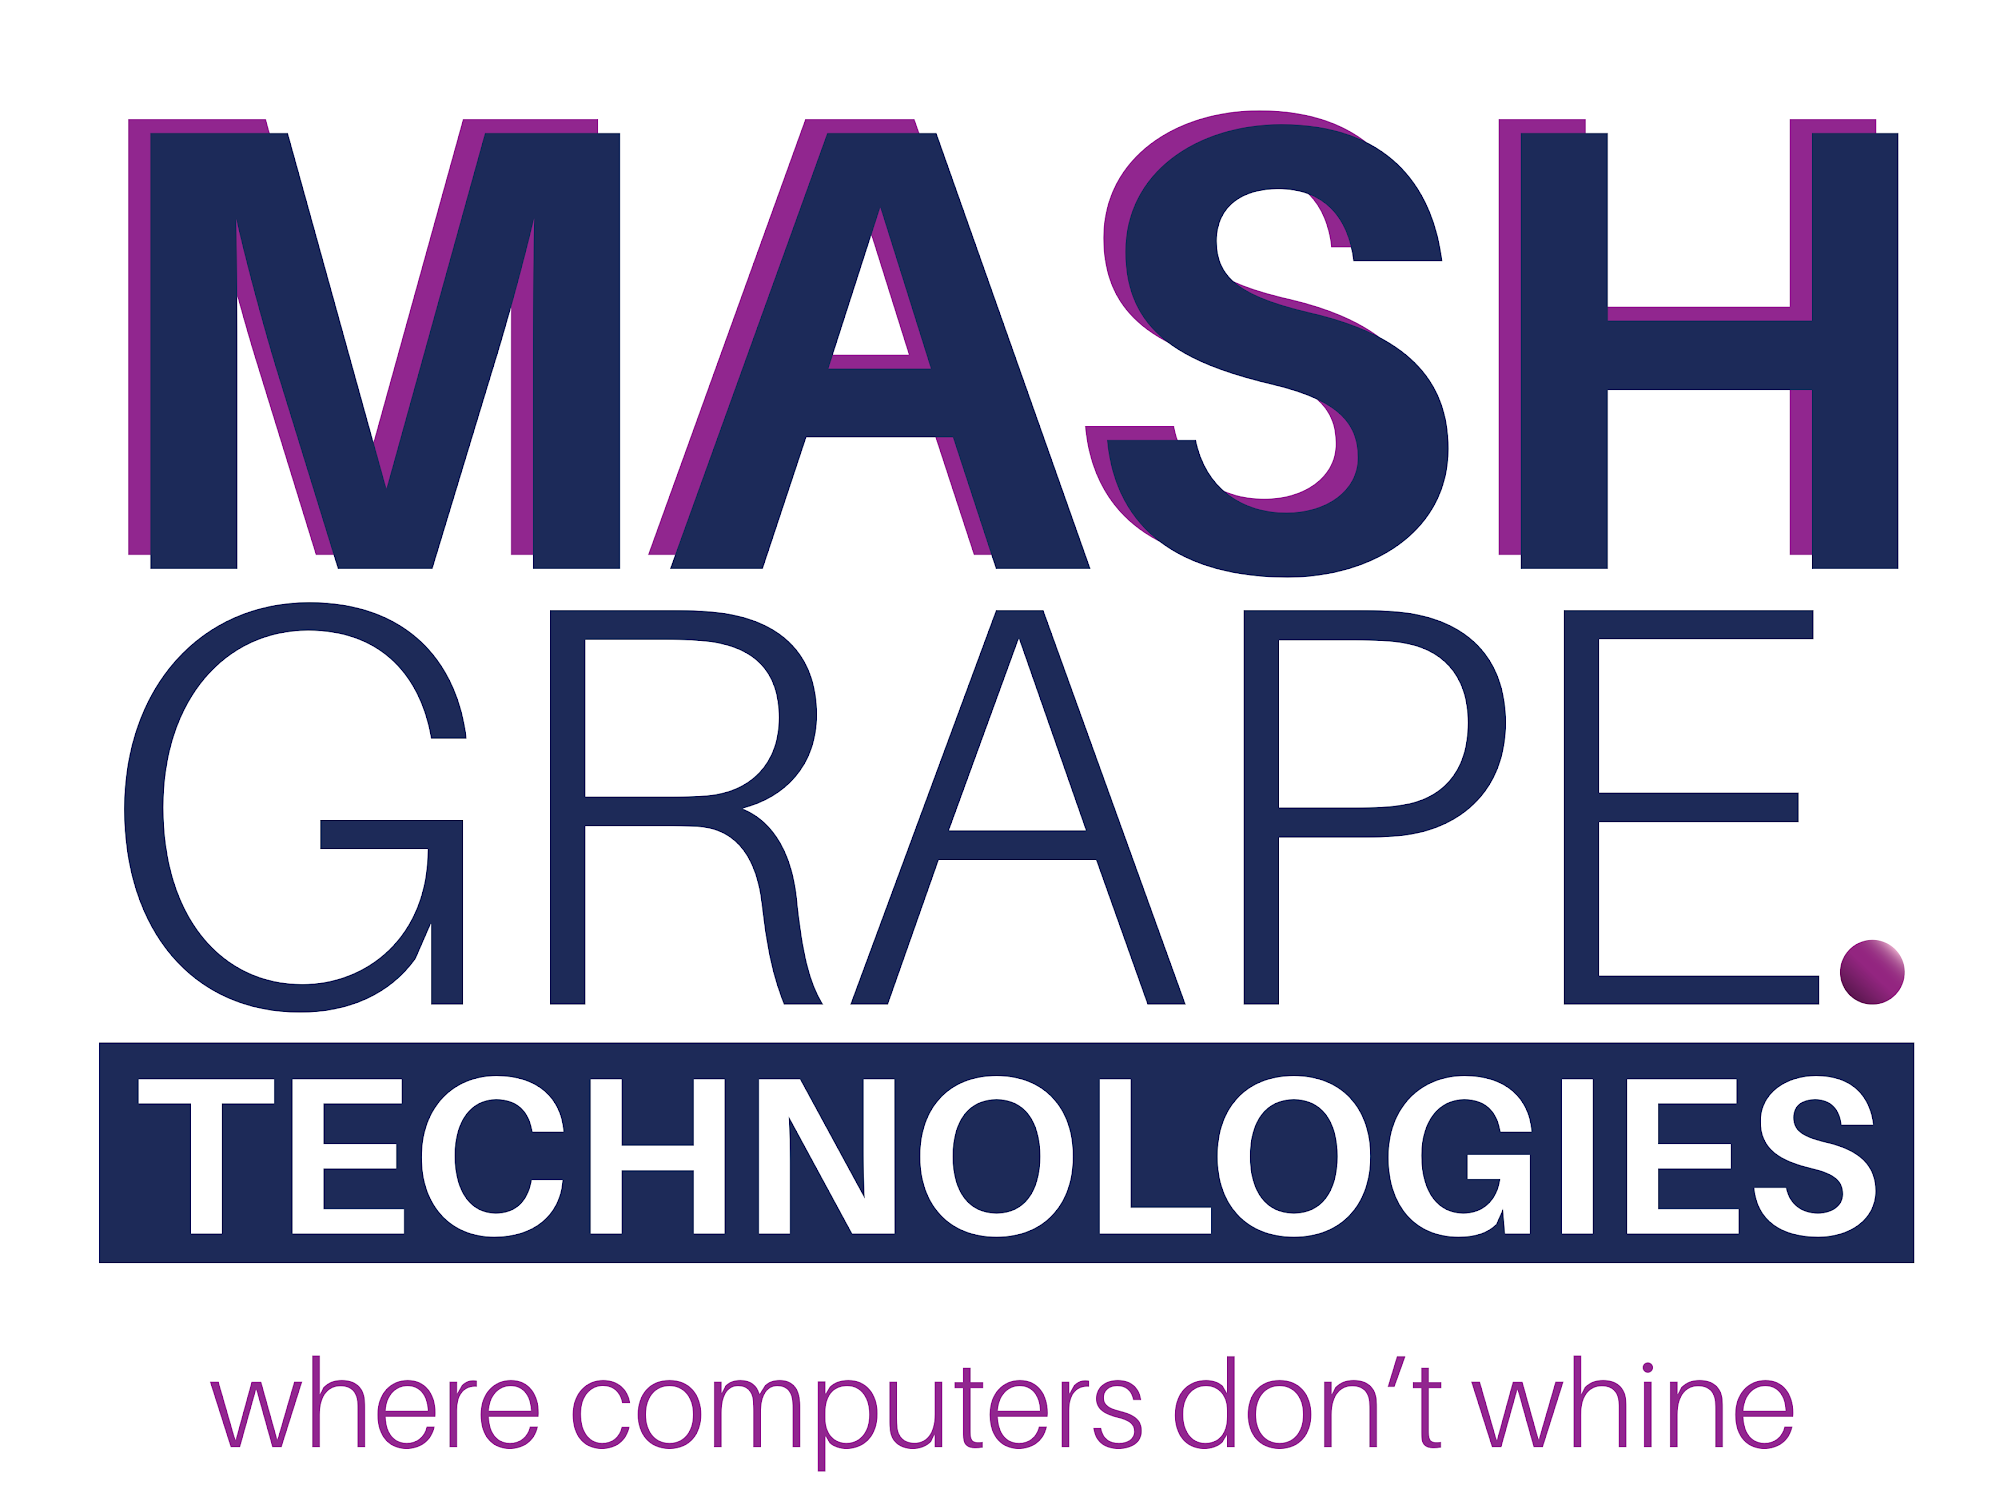 MashGrape Technologies